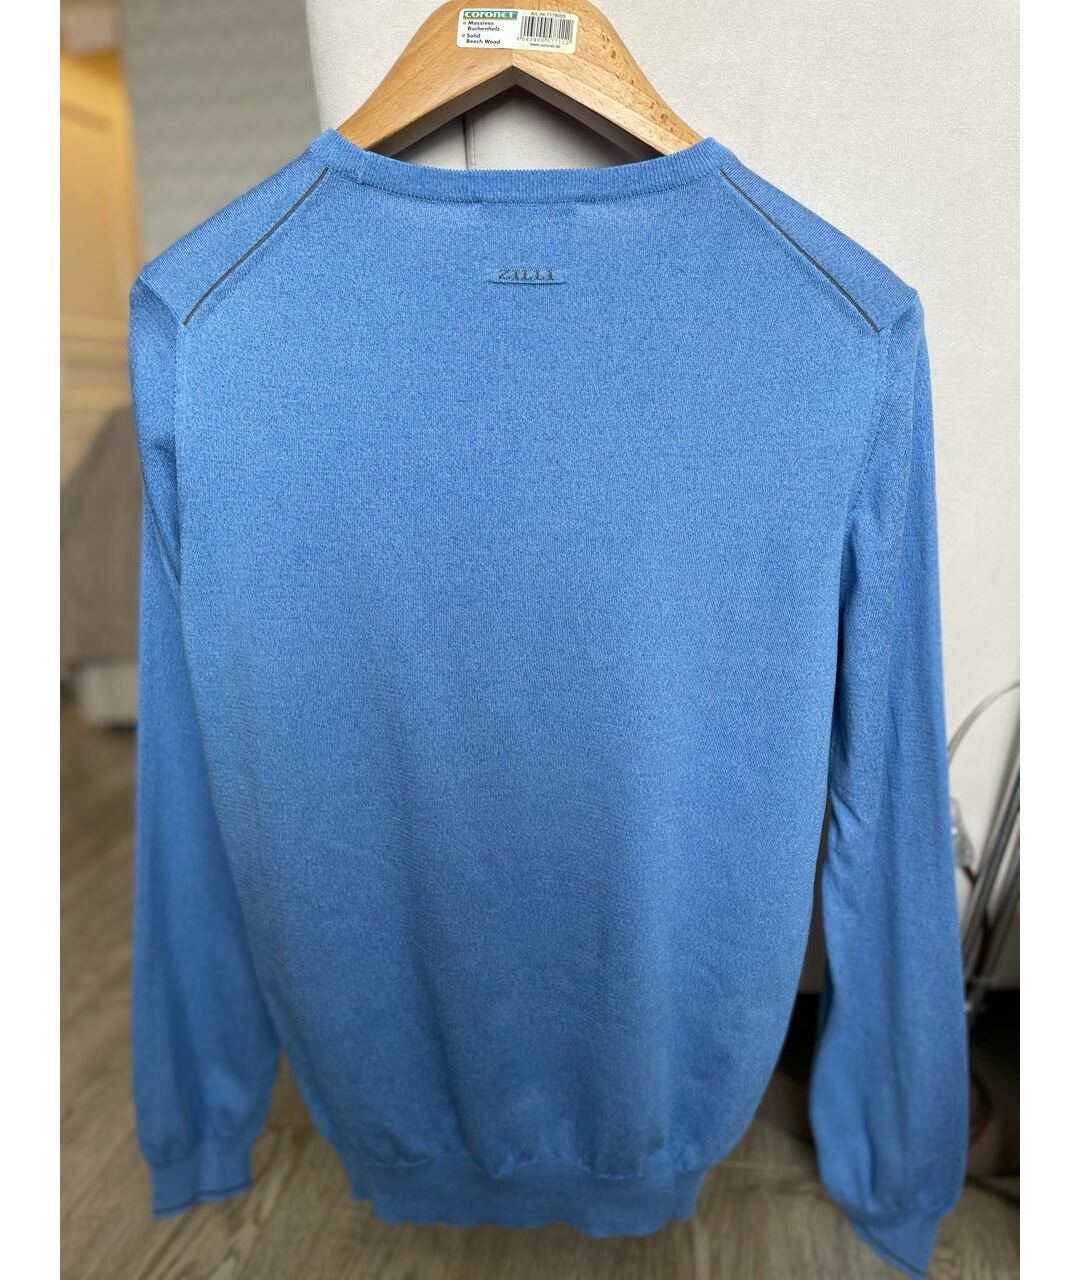 ZILLI Голубой шелковый джемпер / свитер, фото 2